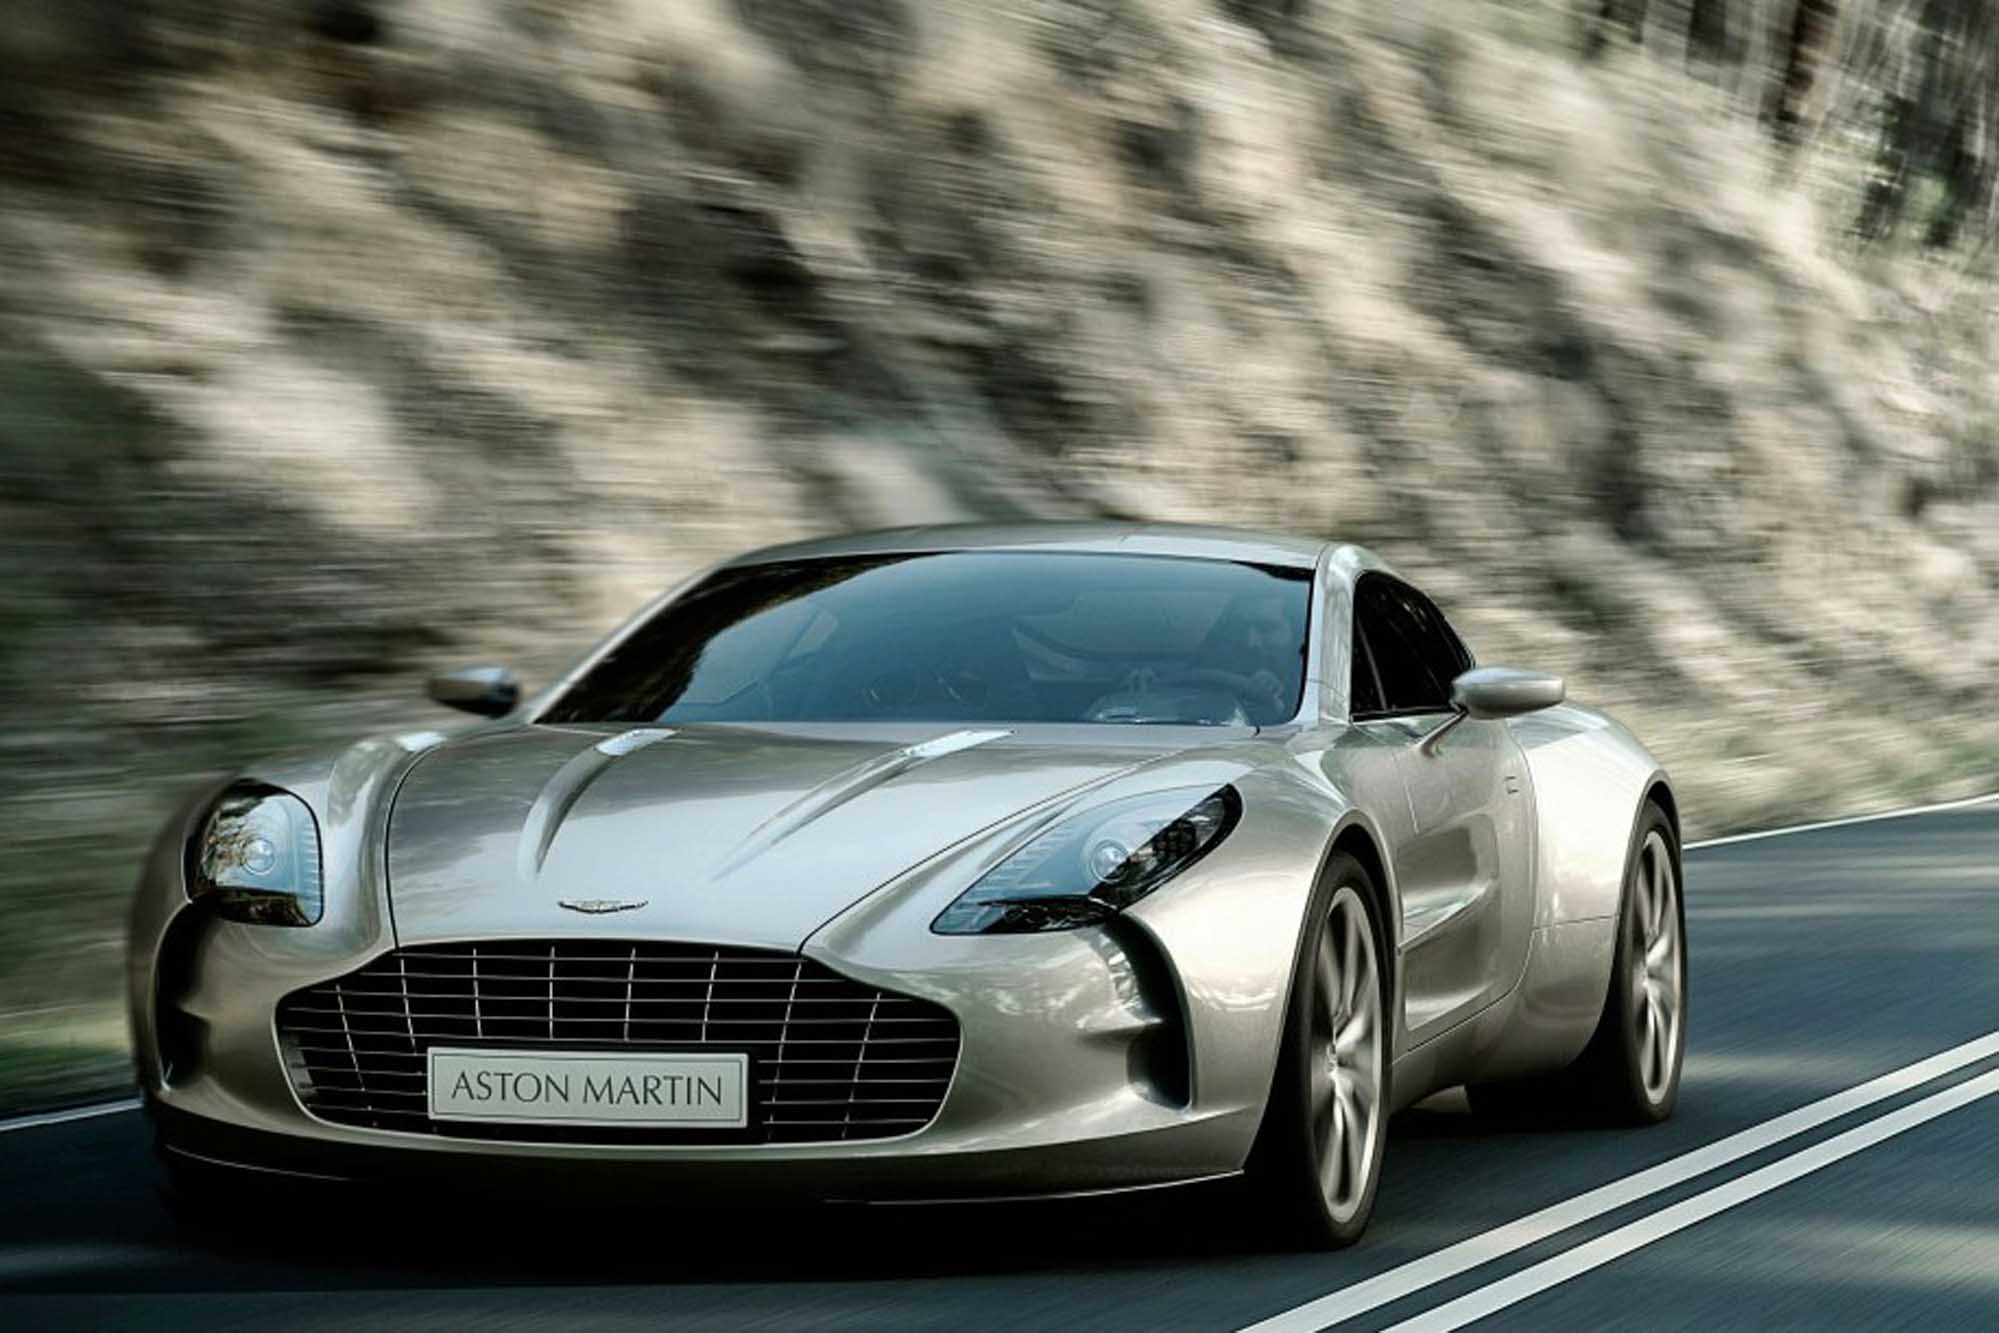 Image principale de l'actu: Aston martin one 77 depasse les 350 km par heure 